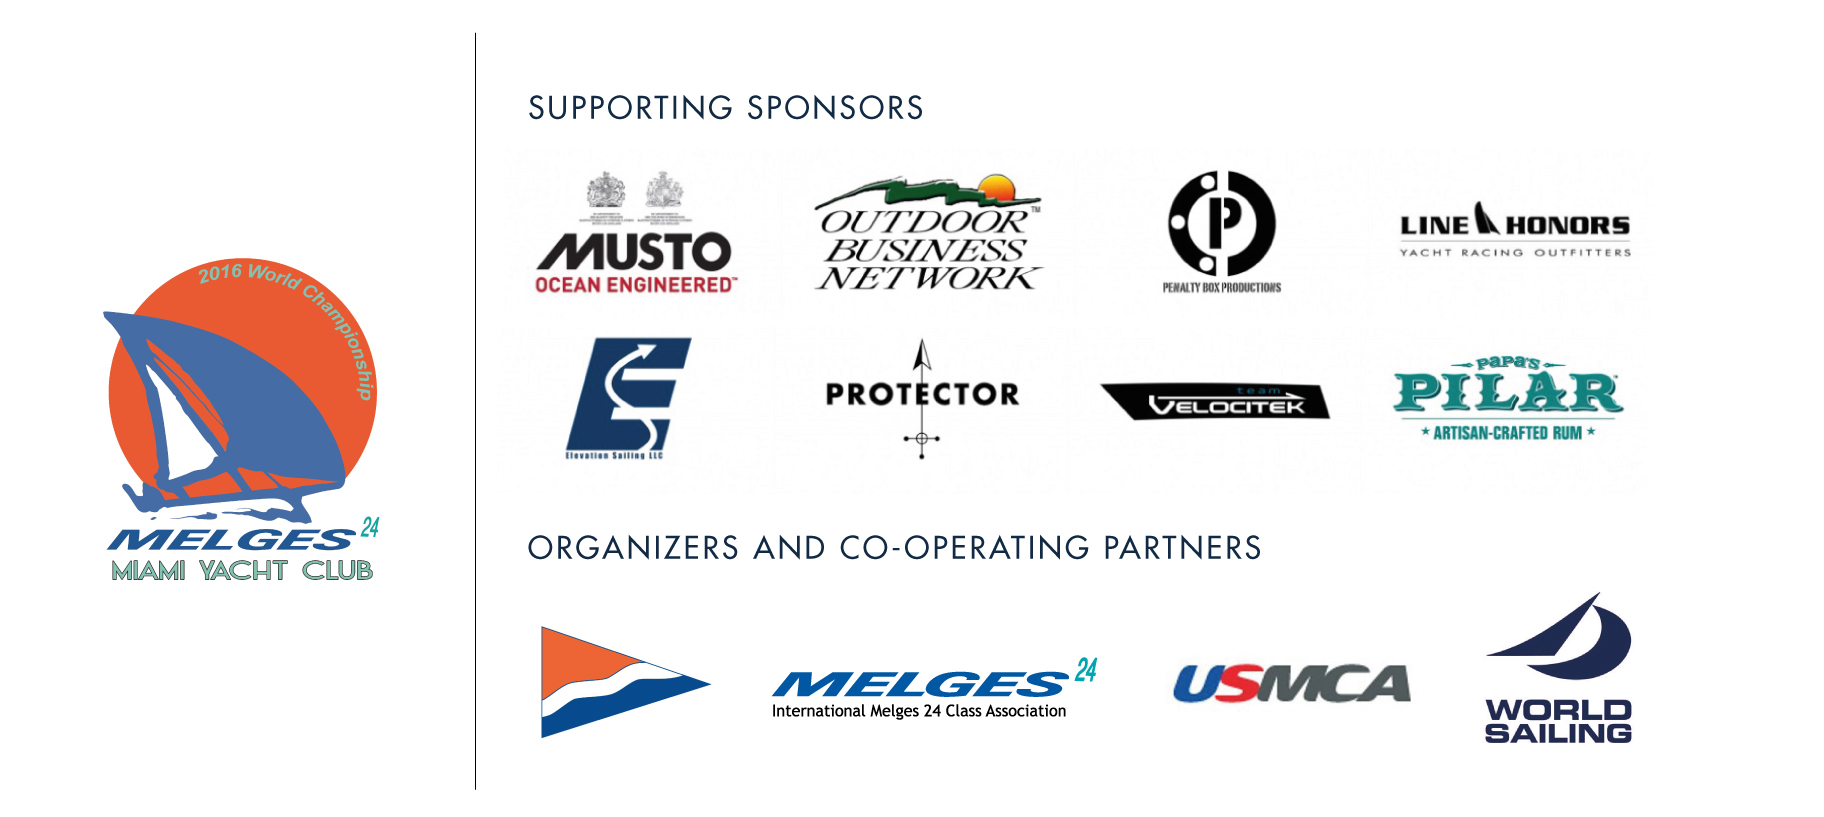 Melges 24 Worlds 2016 sponsors